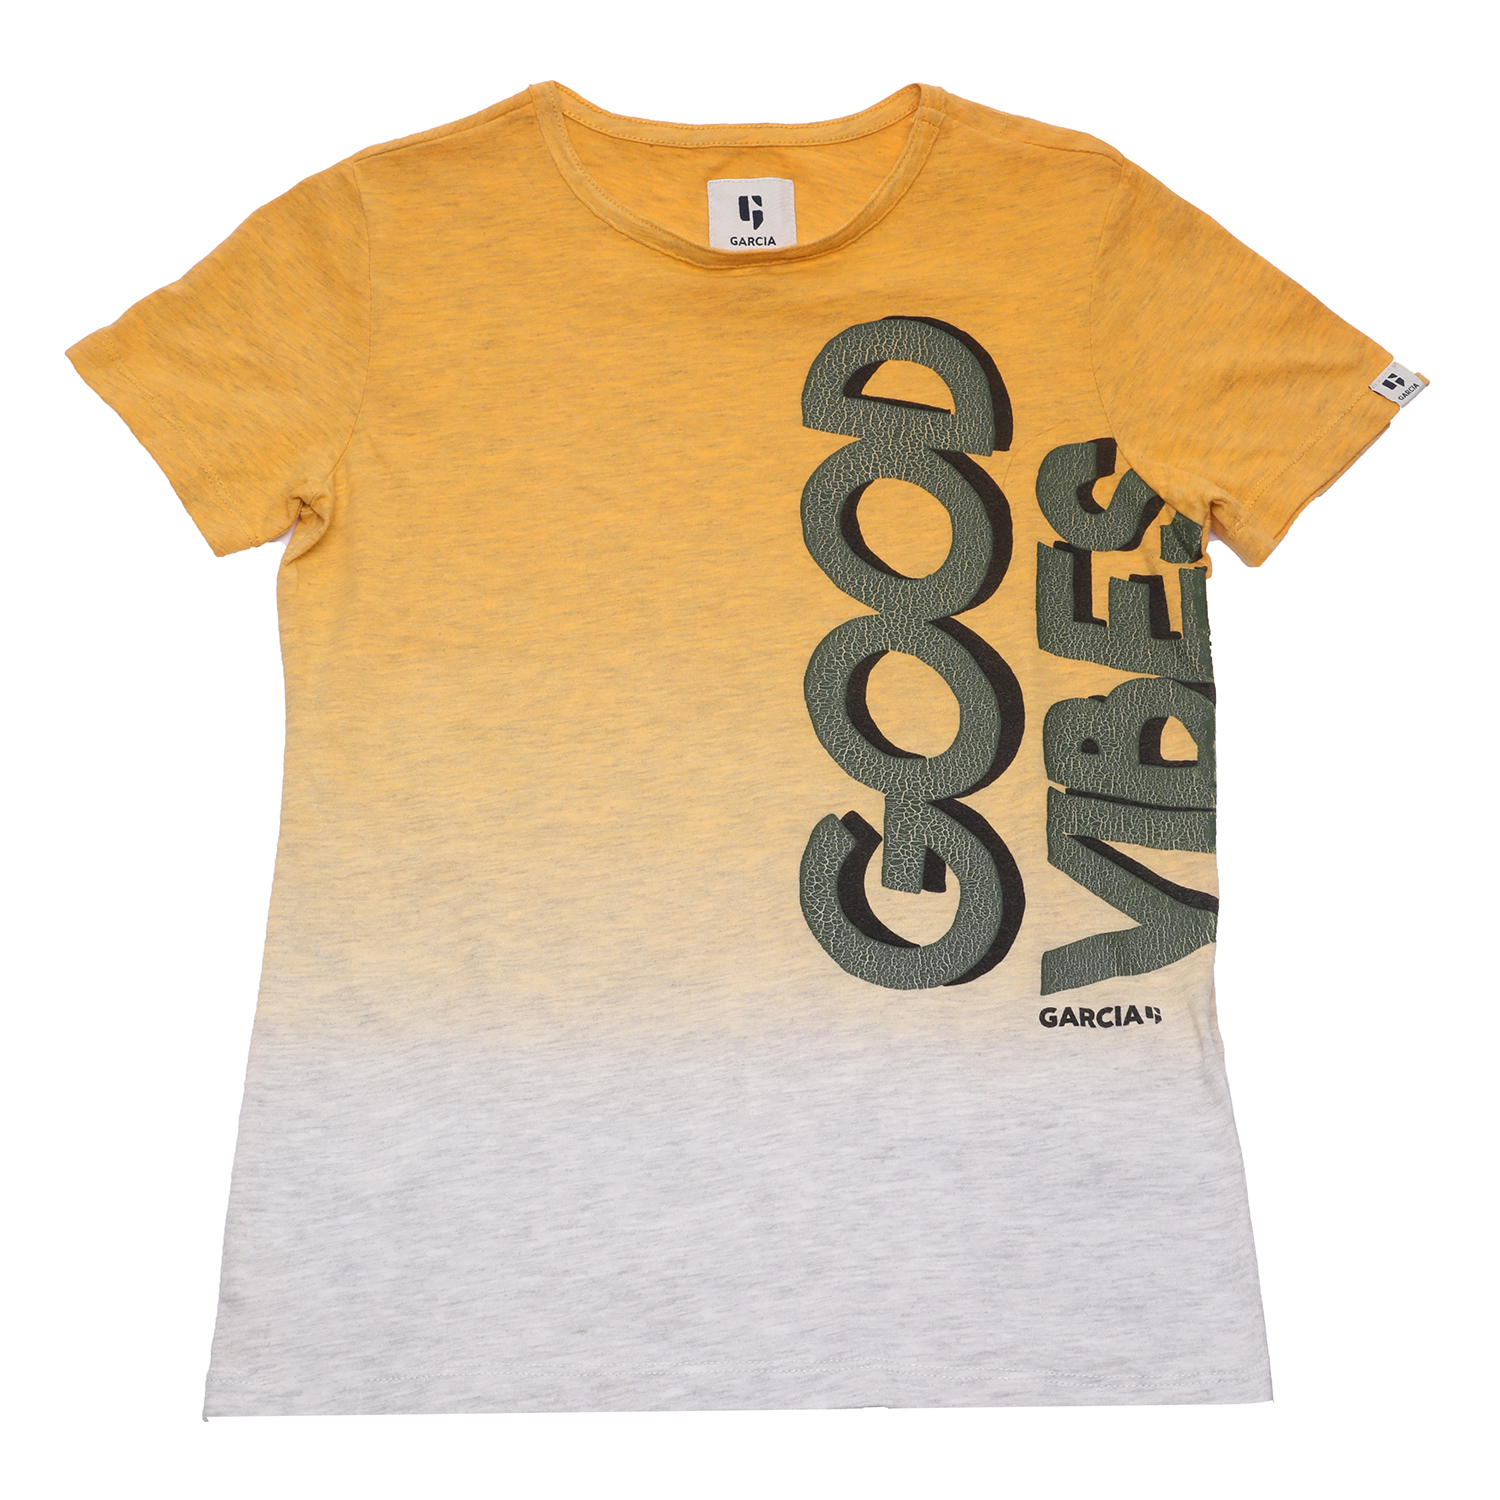 Παιδικά/Boys/Ρούχα/Μπλούζες Κοντομάνικες-Αμάνικες GARCIA JEANS - Παιδικό t-shirt GARCIA JEAN κίτρινο γκρι